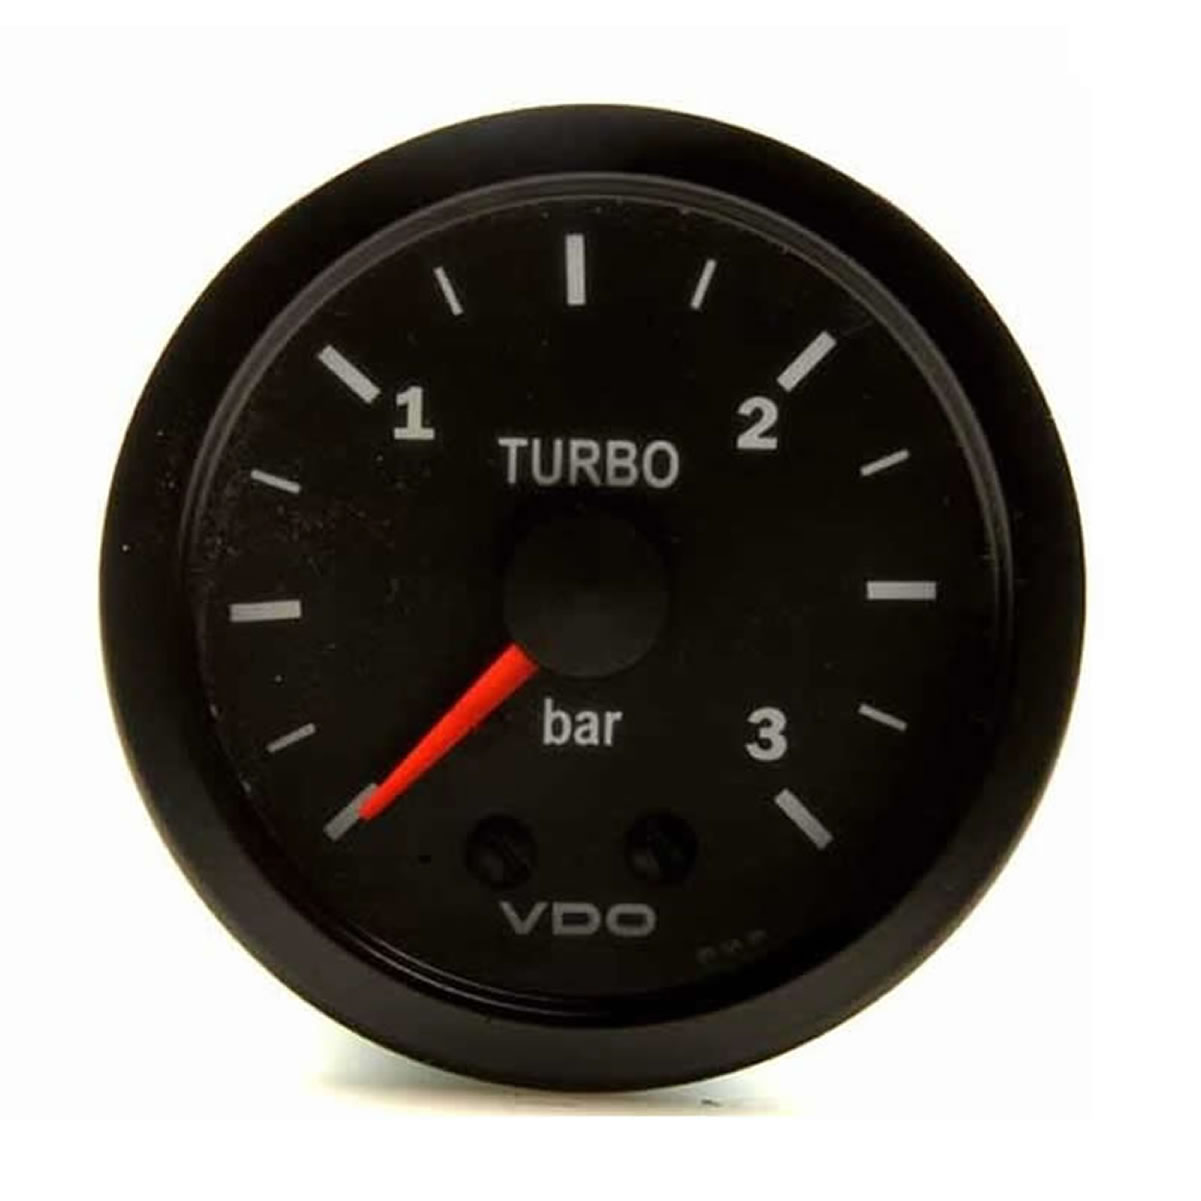 VDO Mechanical Turbo Boost Gauges 3 bar